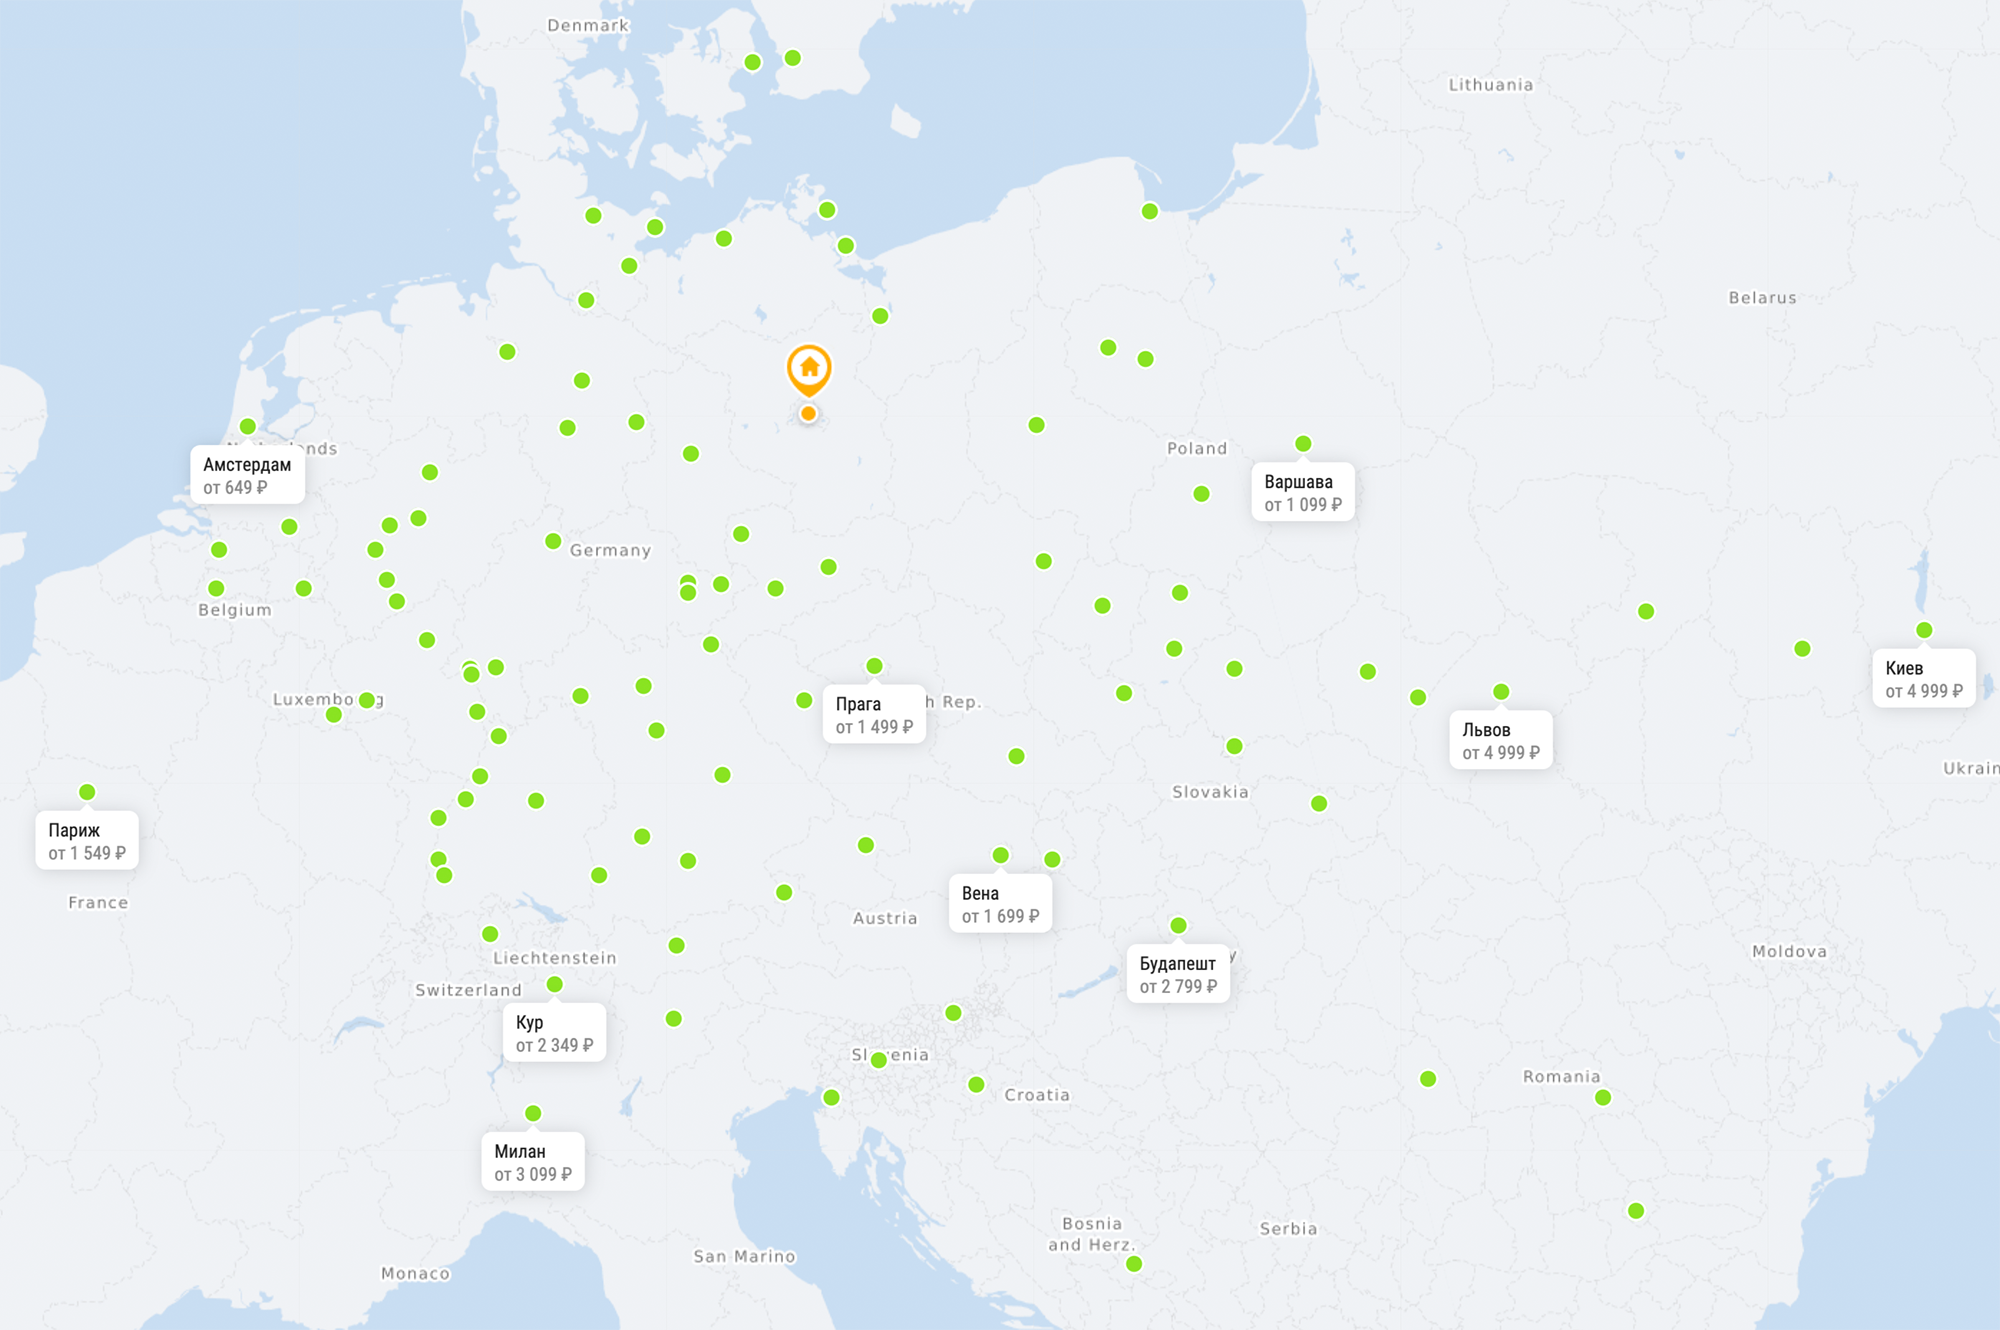 Маршрутная сеть автобусов Flixbus в Европе